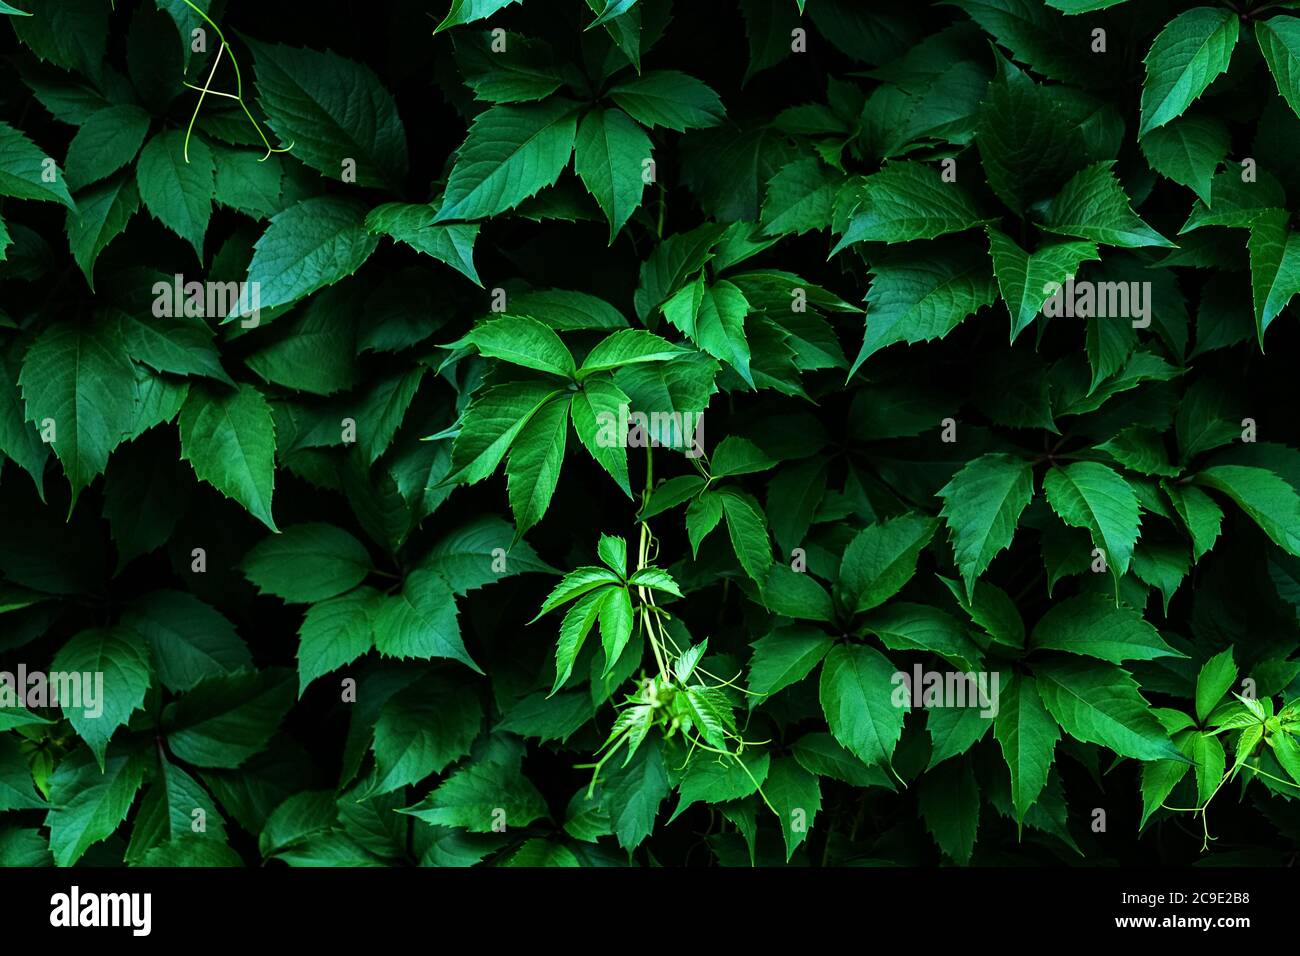 Virginia creeper dark green leaves background, Parthenocissus quinquefolia foliage texture Stock Photo